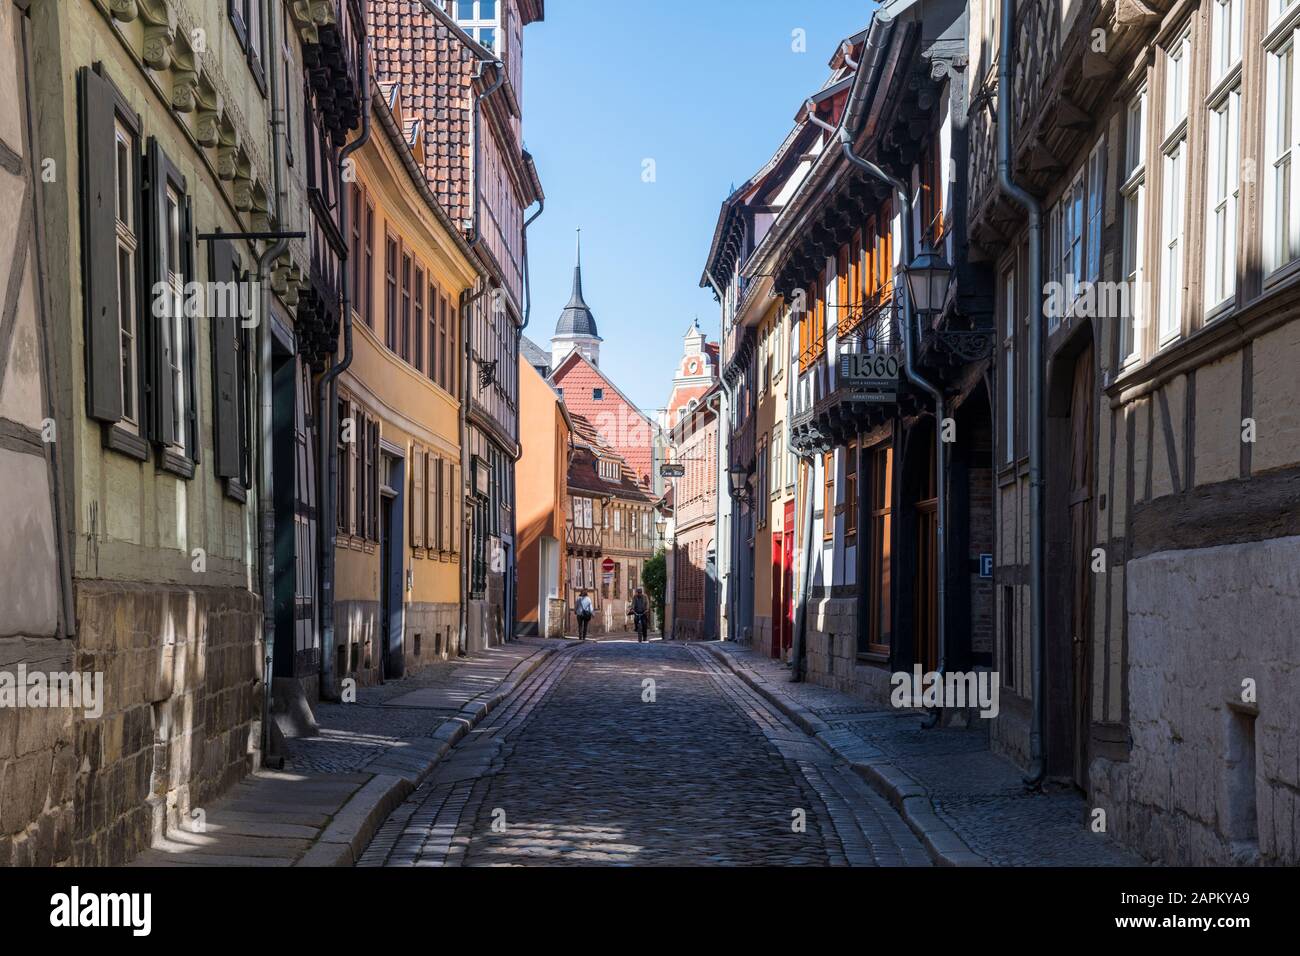 Deutschland, Sachsen-Anhalt, Quedlinburg, Kopfsteinpflaster-Gasse zwischen Häusern der historischen Stadt Stockfoto